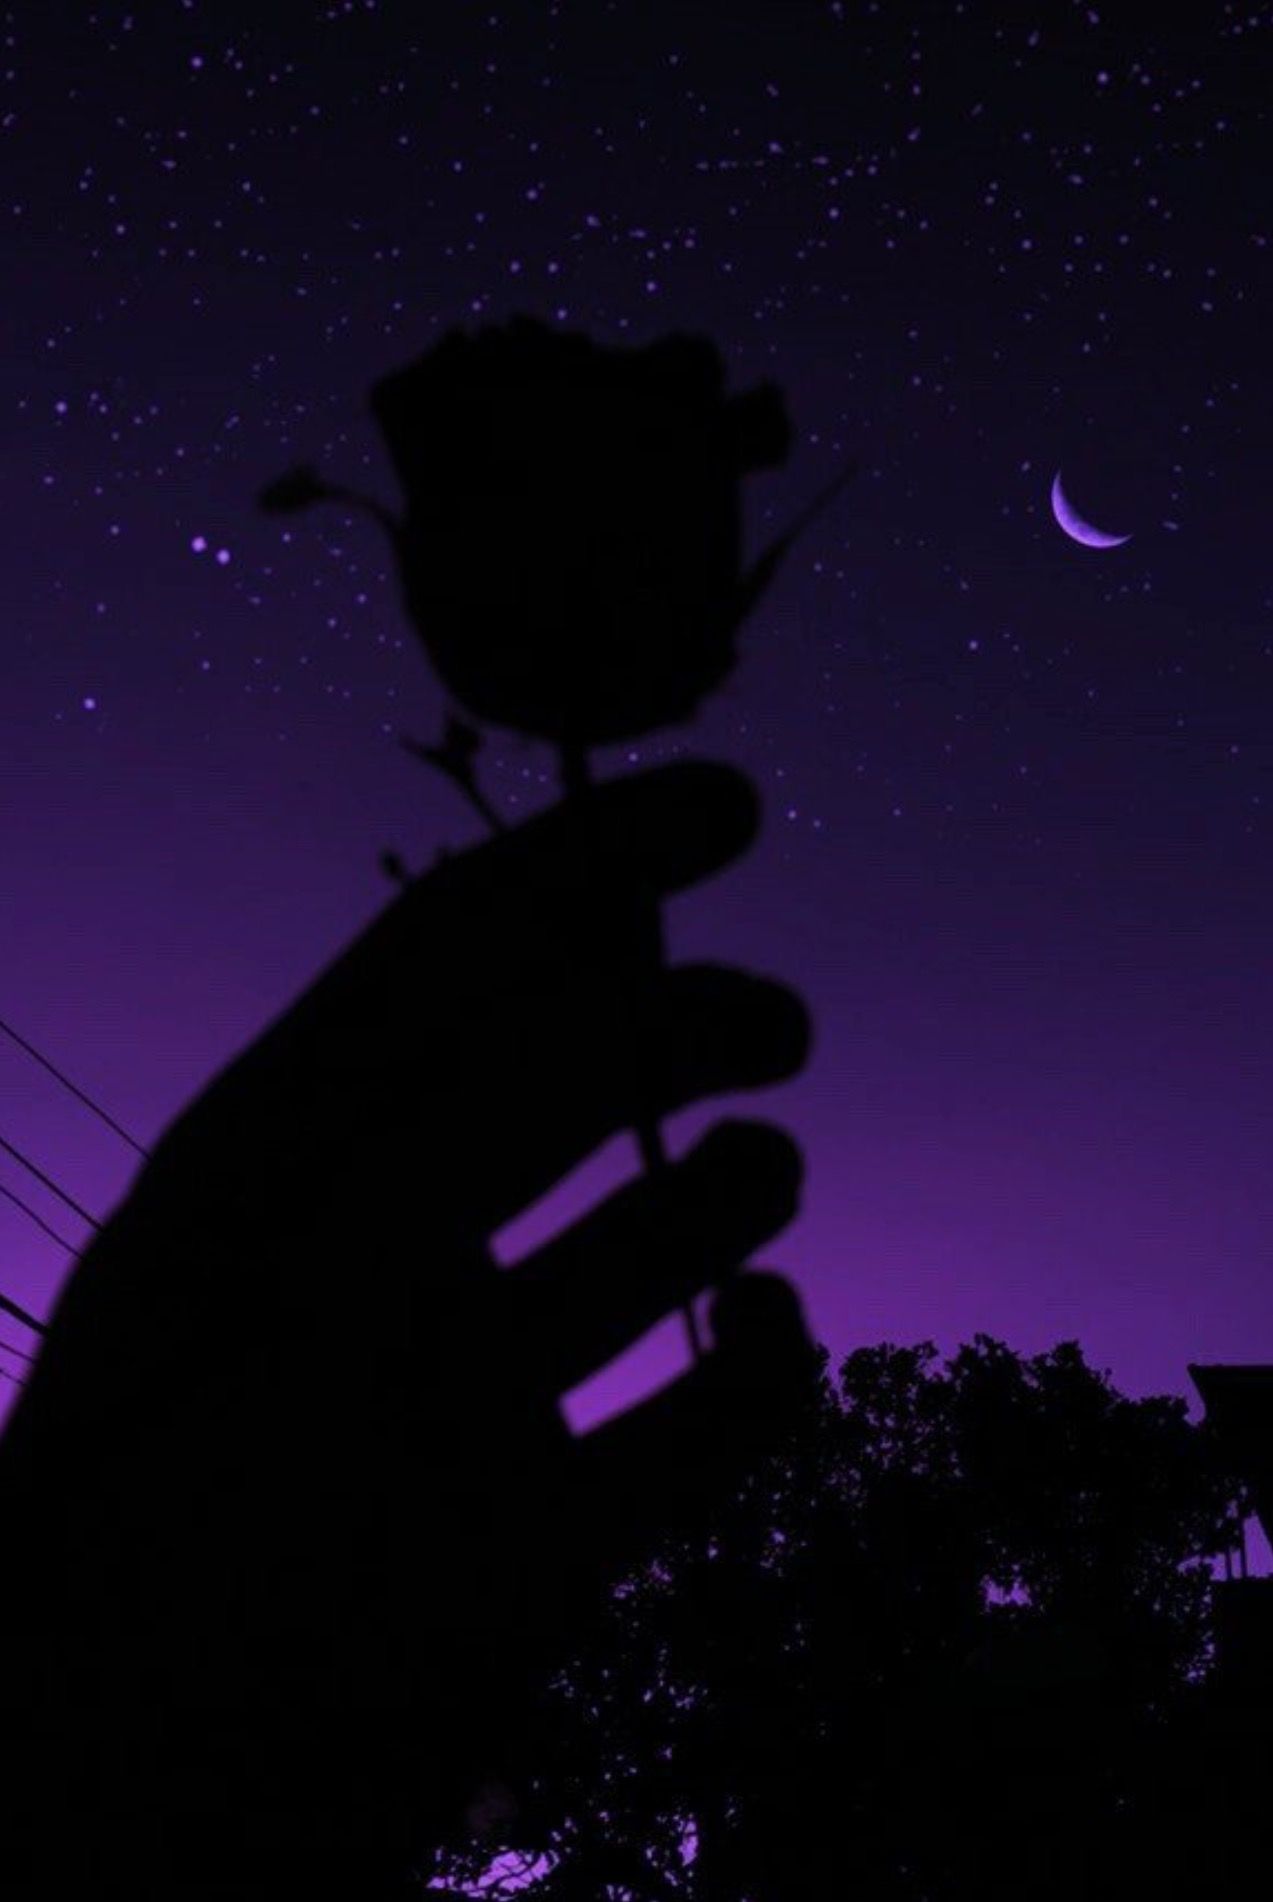 A hand holding up some flowers in the dark - Dark purple, purple, dark phone, dark vaporwave, sky, violet, neon purple, cute purple, dark